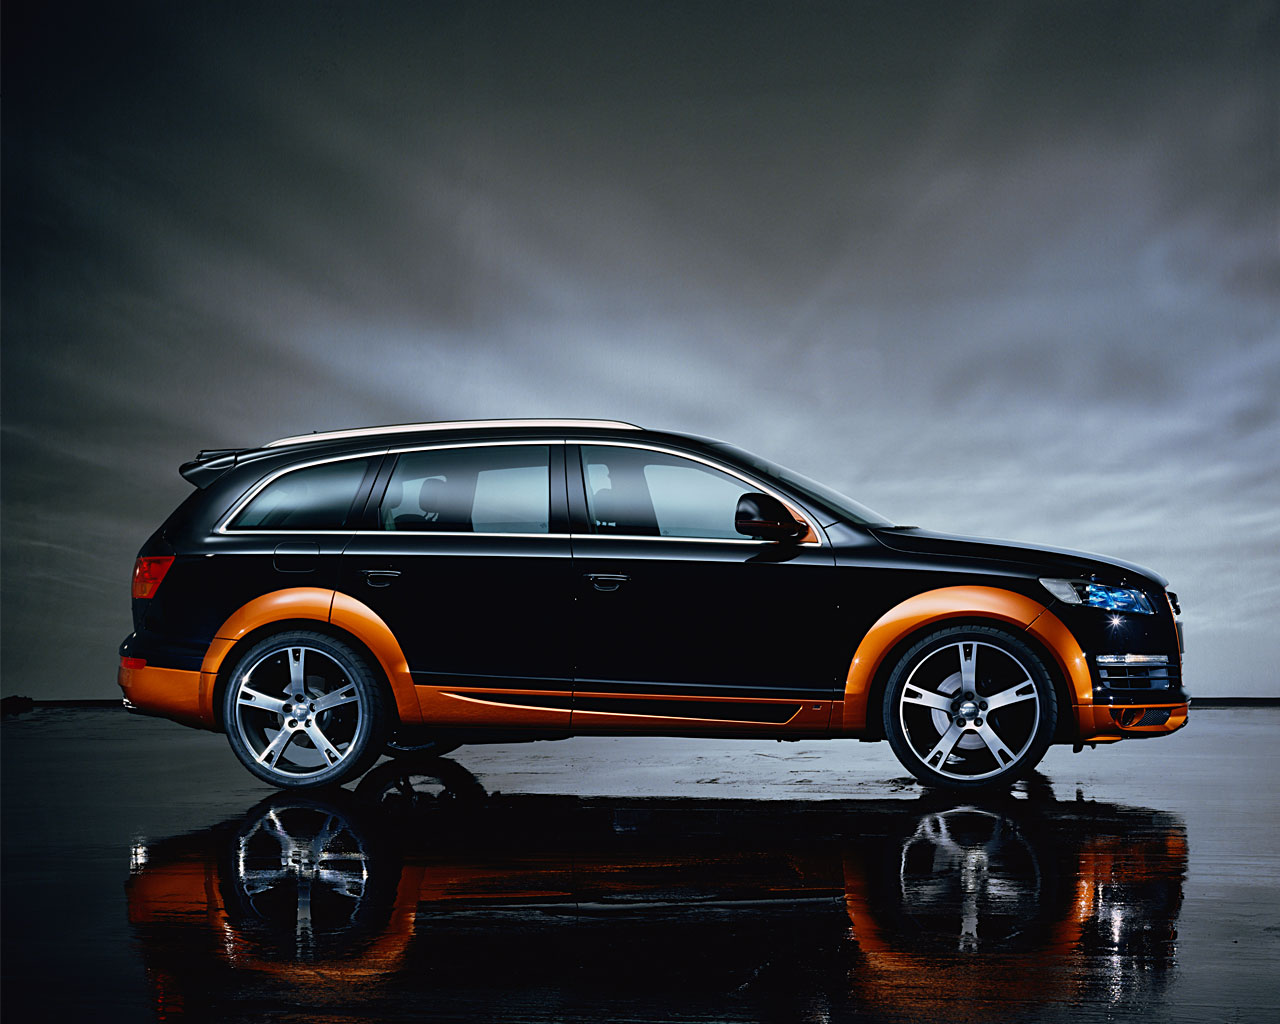 [바탕화면 모음] 세계의 명차(31) 아우디 Audi<14> - 블로그